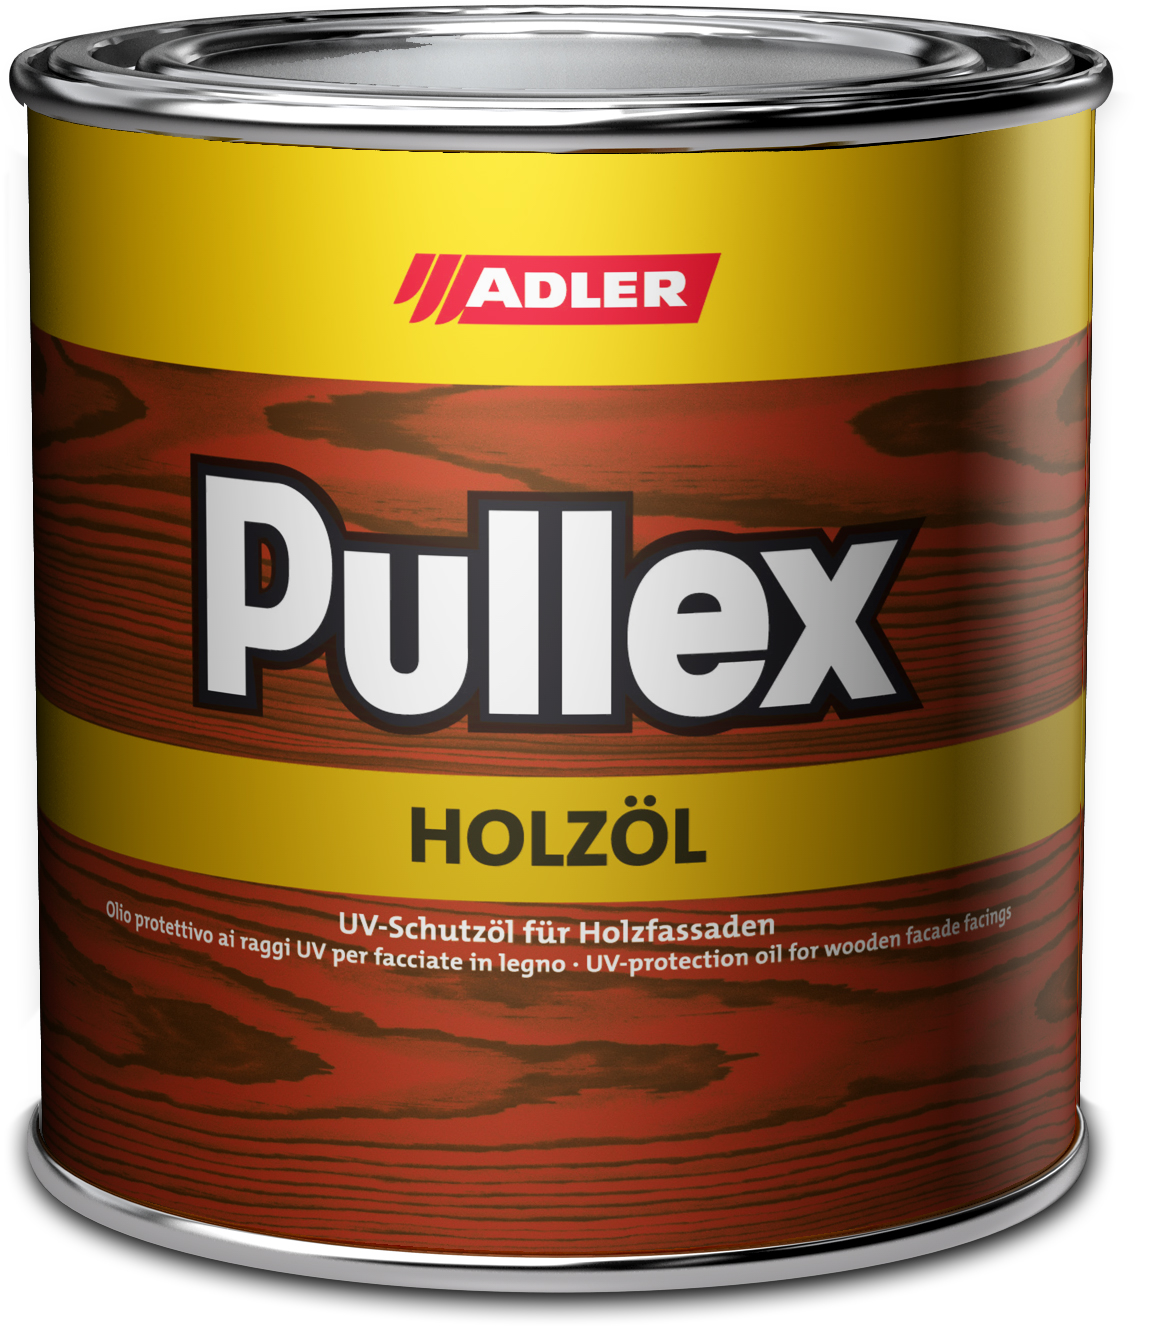 Adler Pullex Holzöl Farblos,2.5L